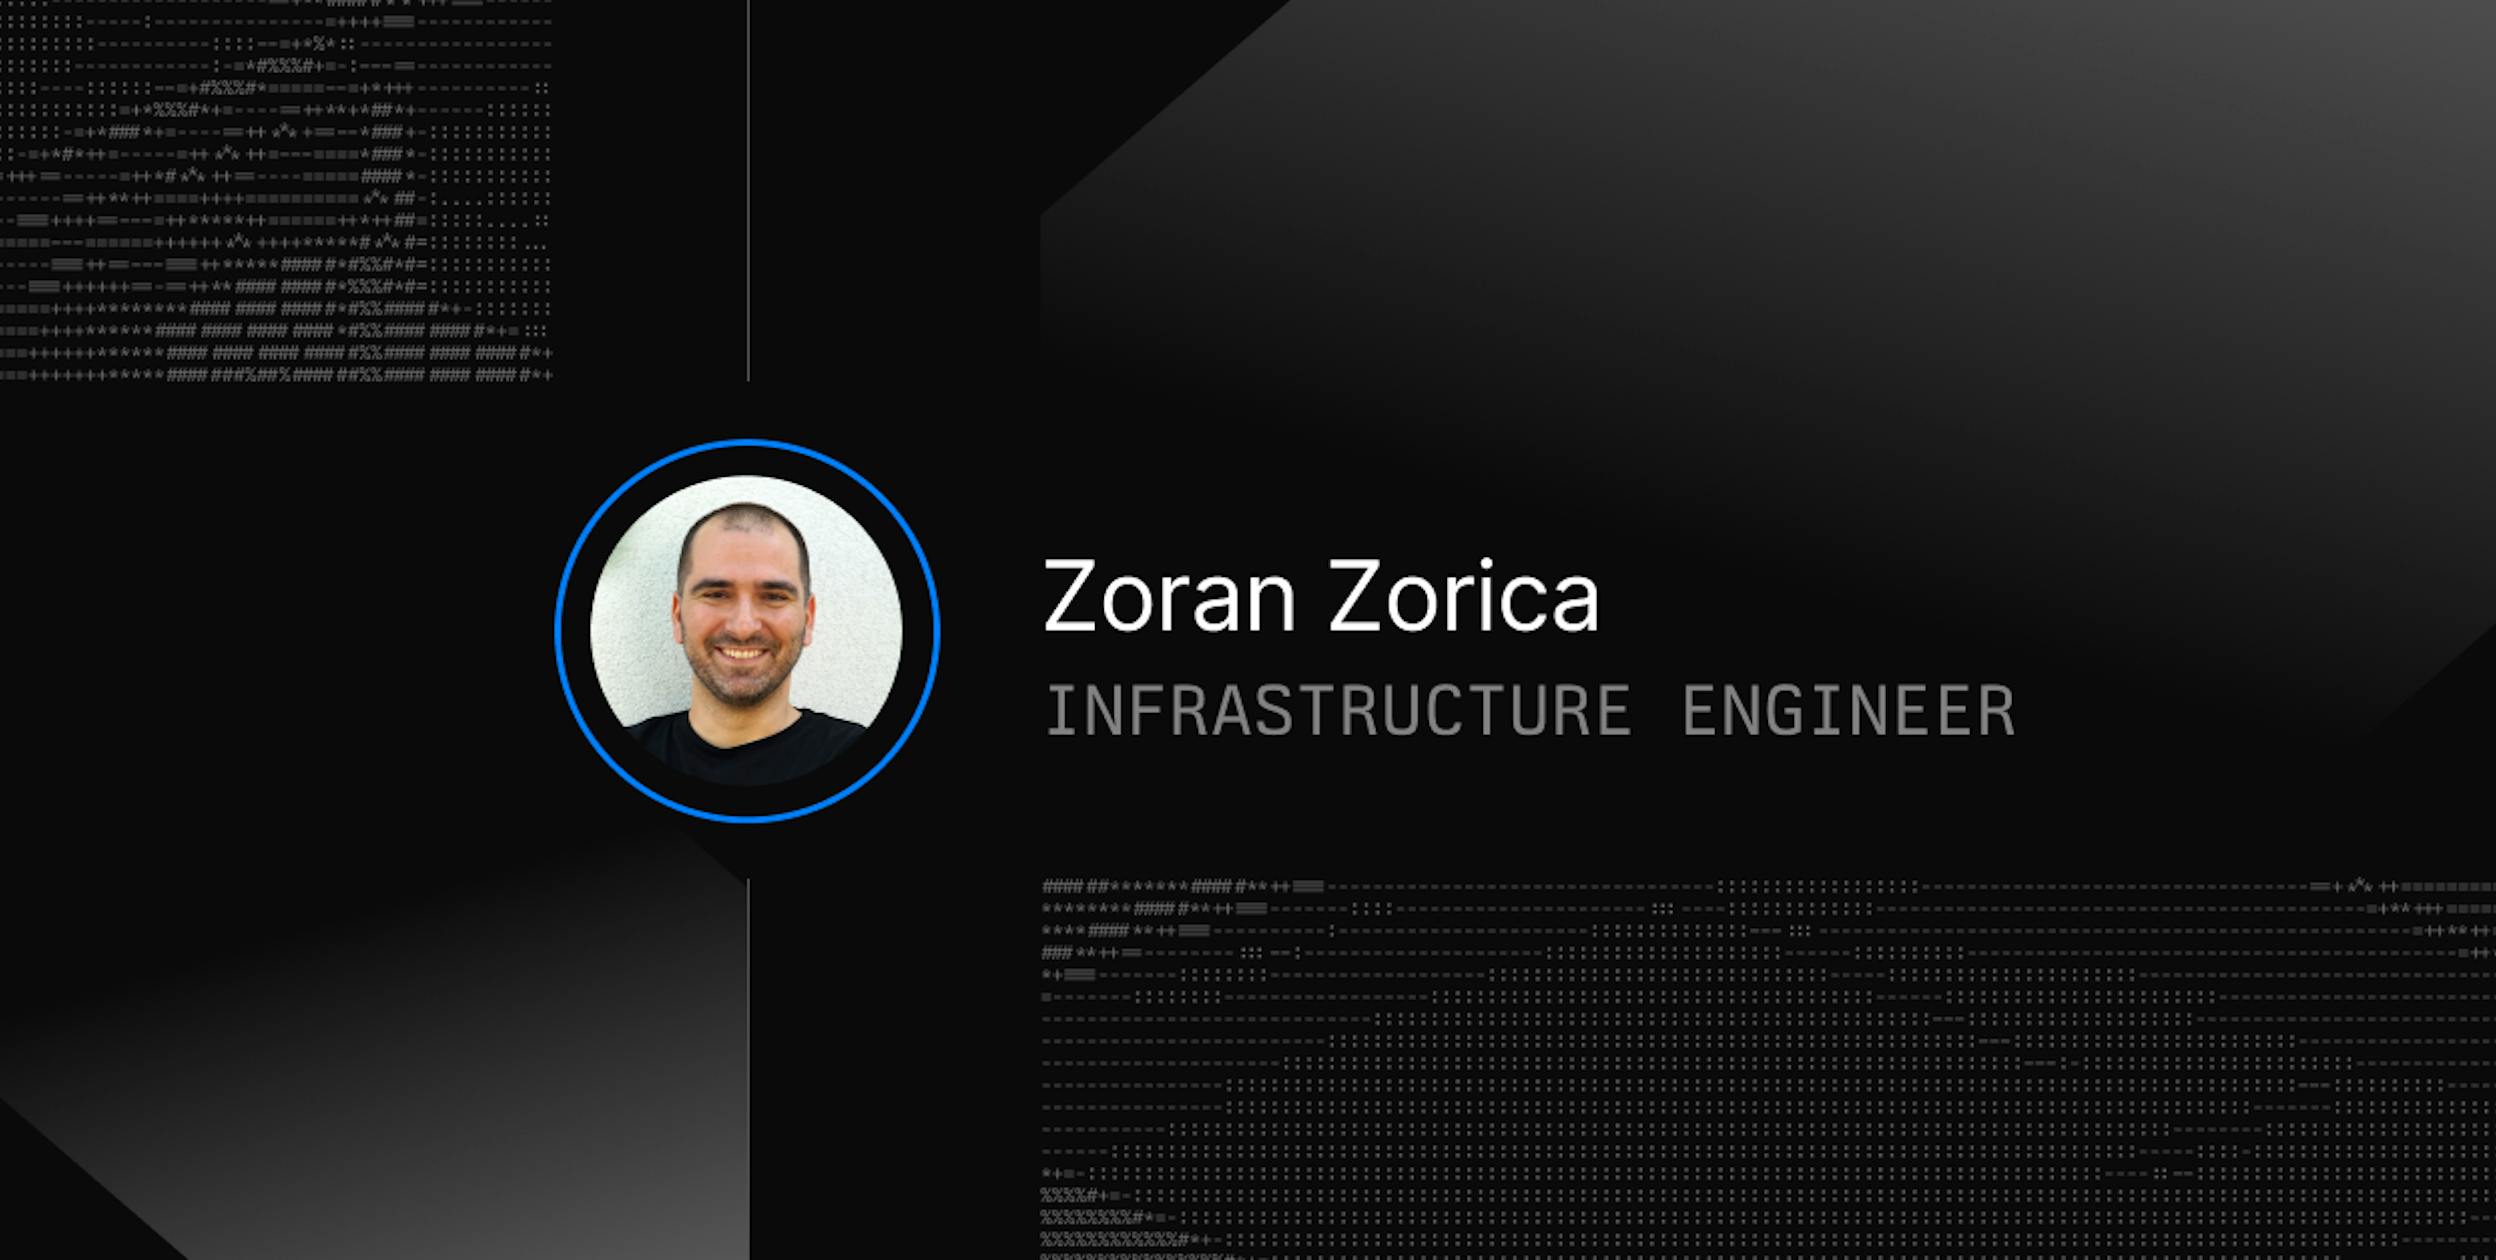 Meet Zoran Zorica, Our Infrastructure Engineer